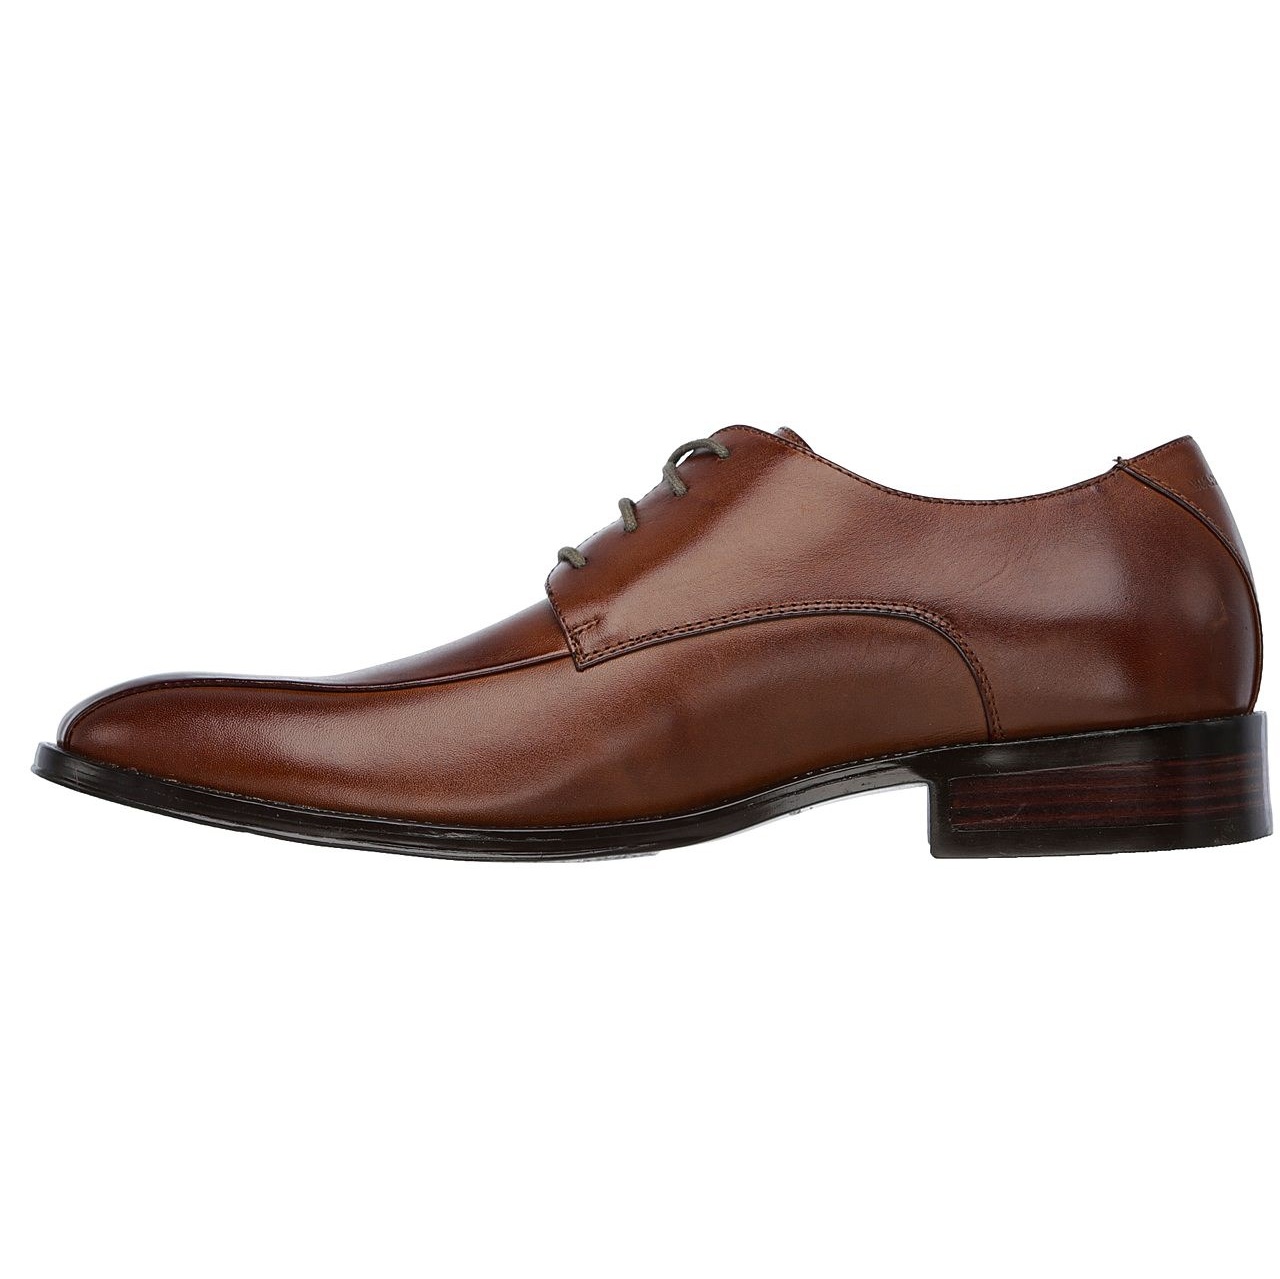 کفش رسمی مردانه اسکچرز مدلMIRACLE 68909COG